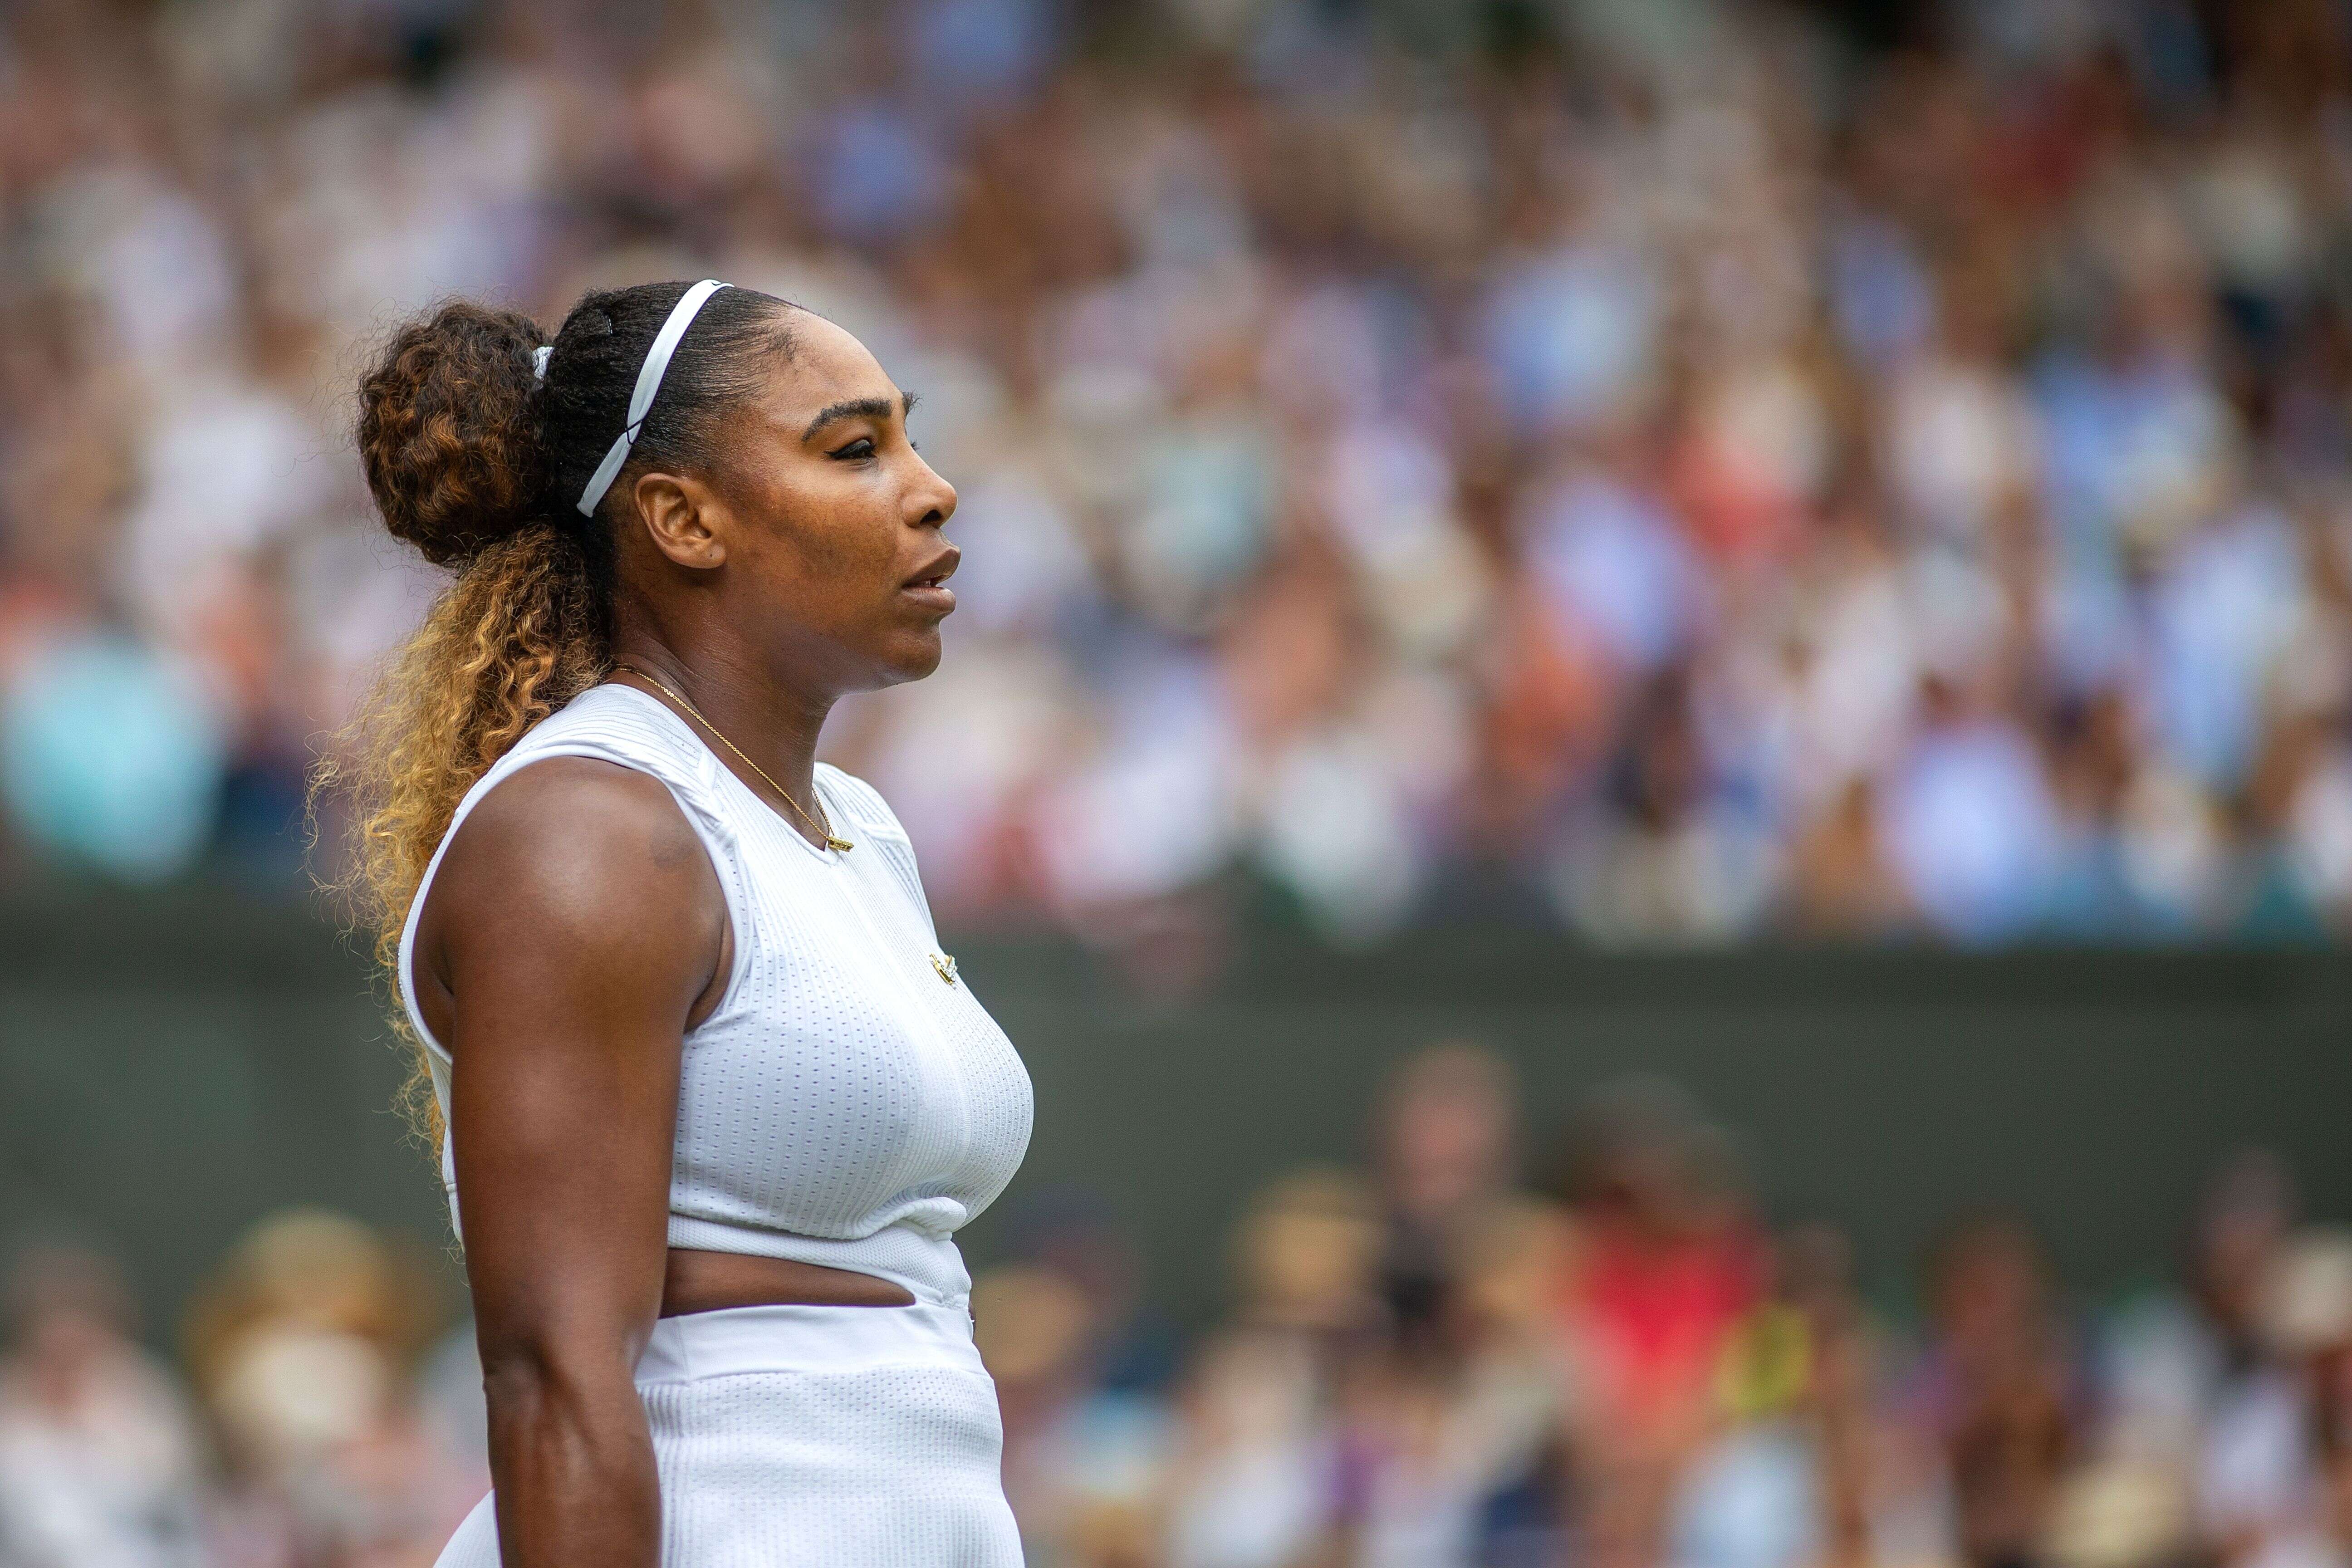 La joueuse de tennis Serena Williams est une figure de la lutte contre le racisme (Image d'illustration)